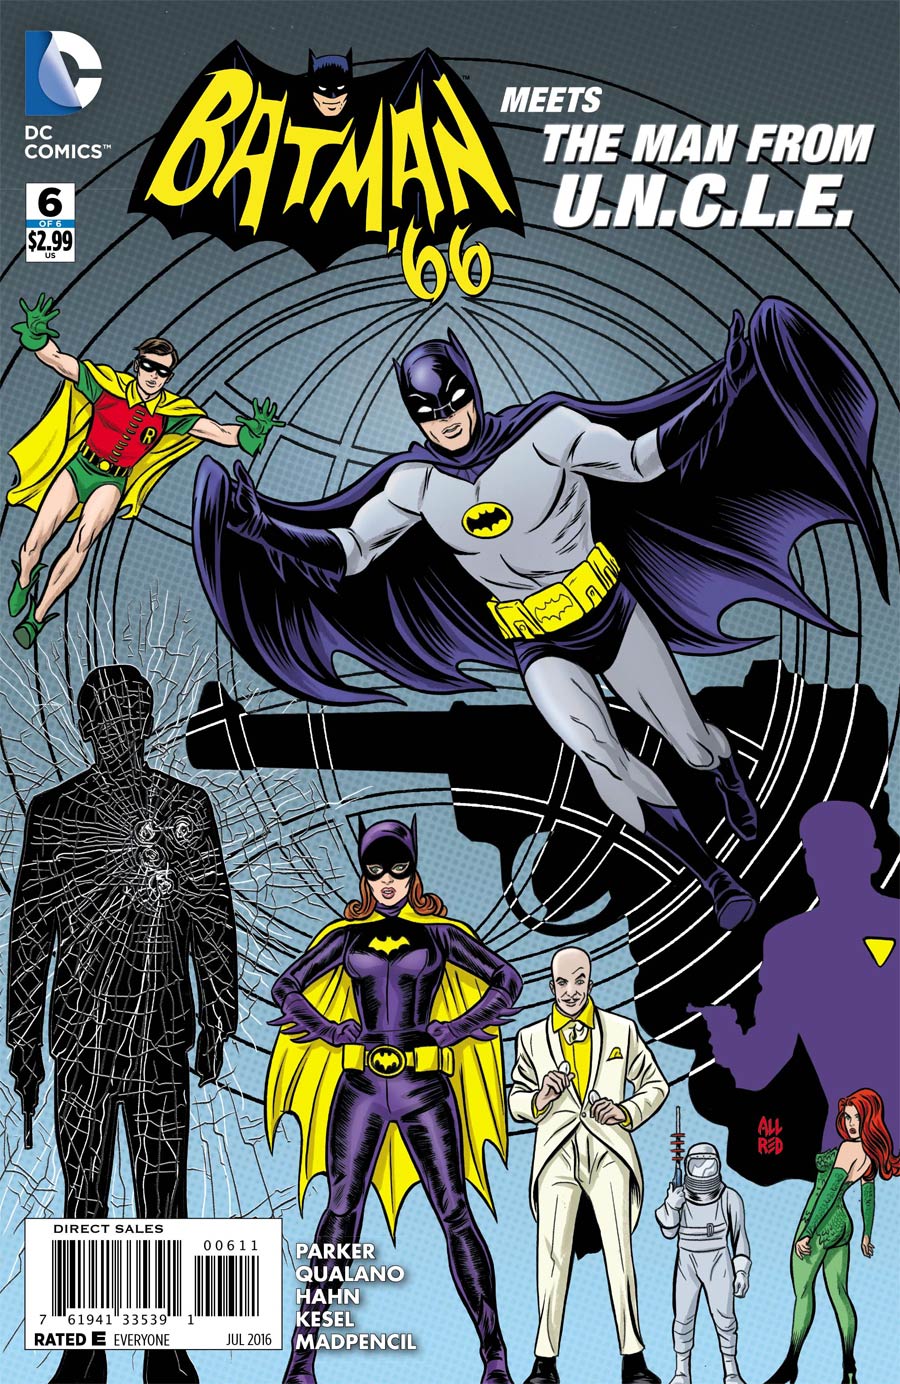 Batman 66 Meets The Man From U.N.C.L.E. #6